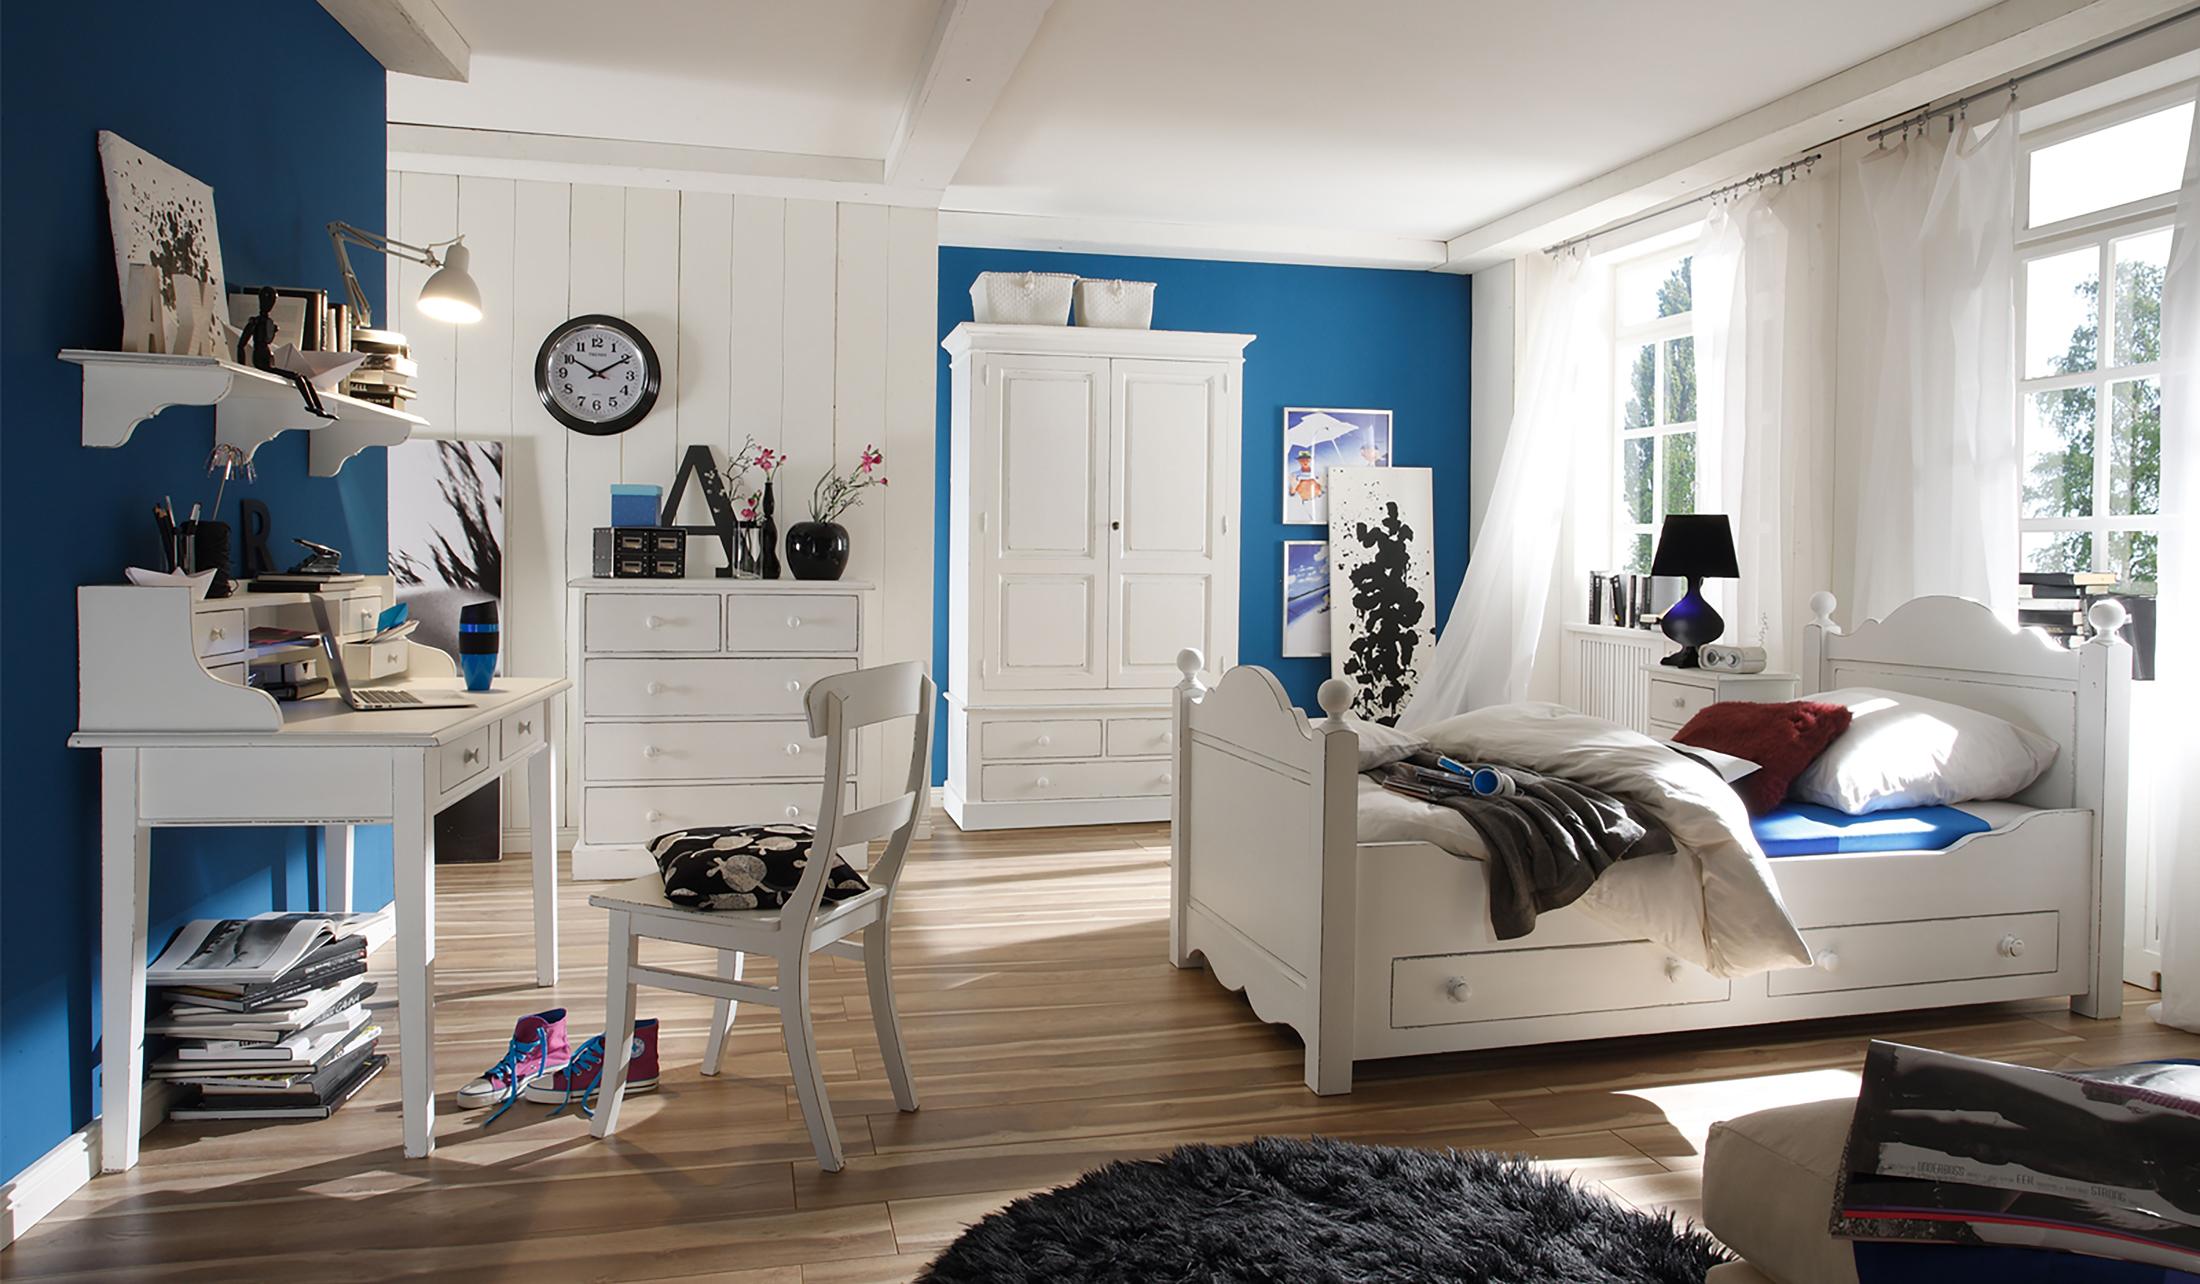 Schlafzimmergestaltung in Blau-Weiß #stuhl #bett #teppich #bettwäsche #schrank #kommode #wanduhr #sekretär #weißerstuhl #lampe #weißersekretär #blauewandfarbe ©Massivum